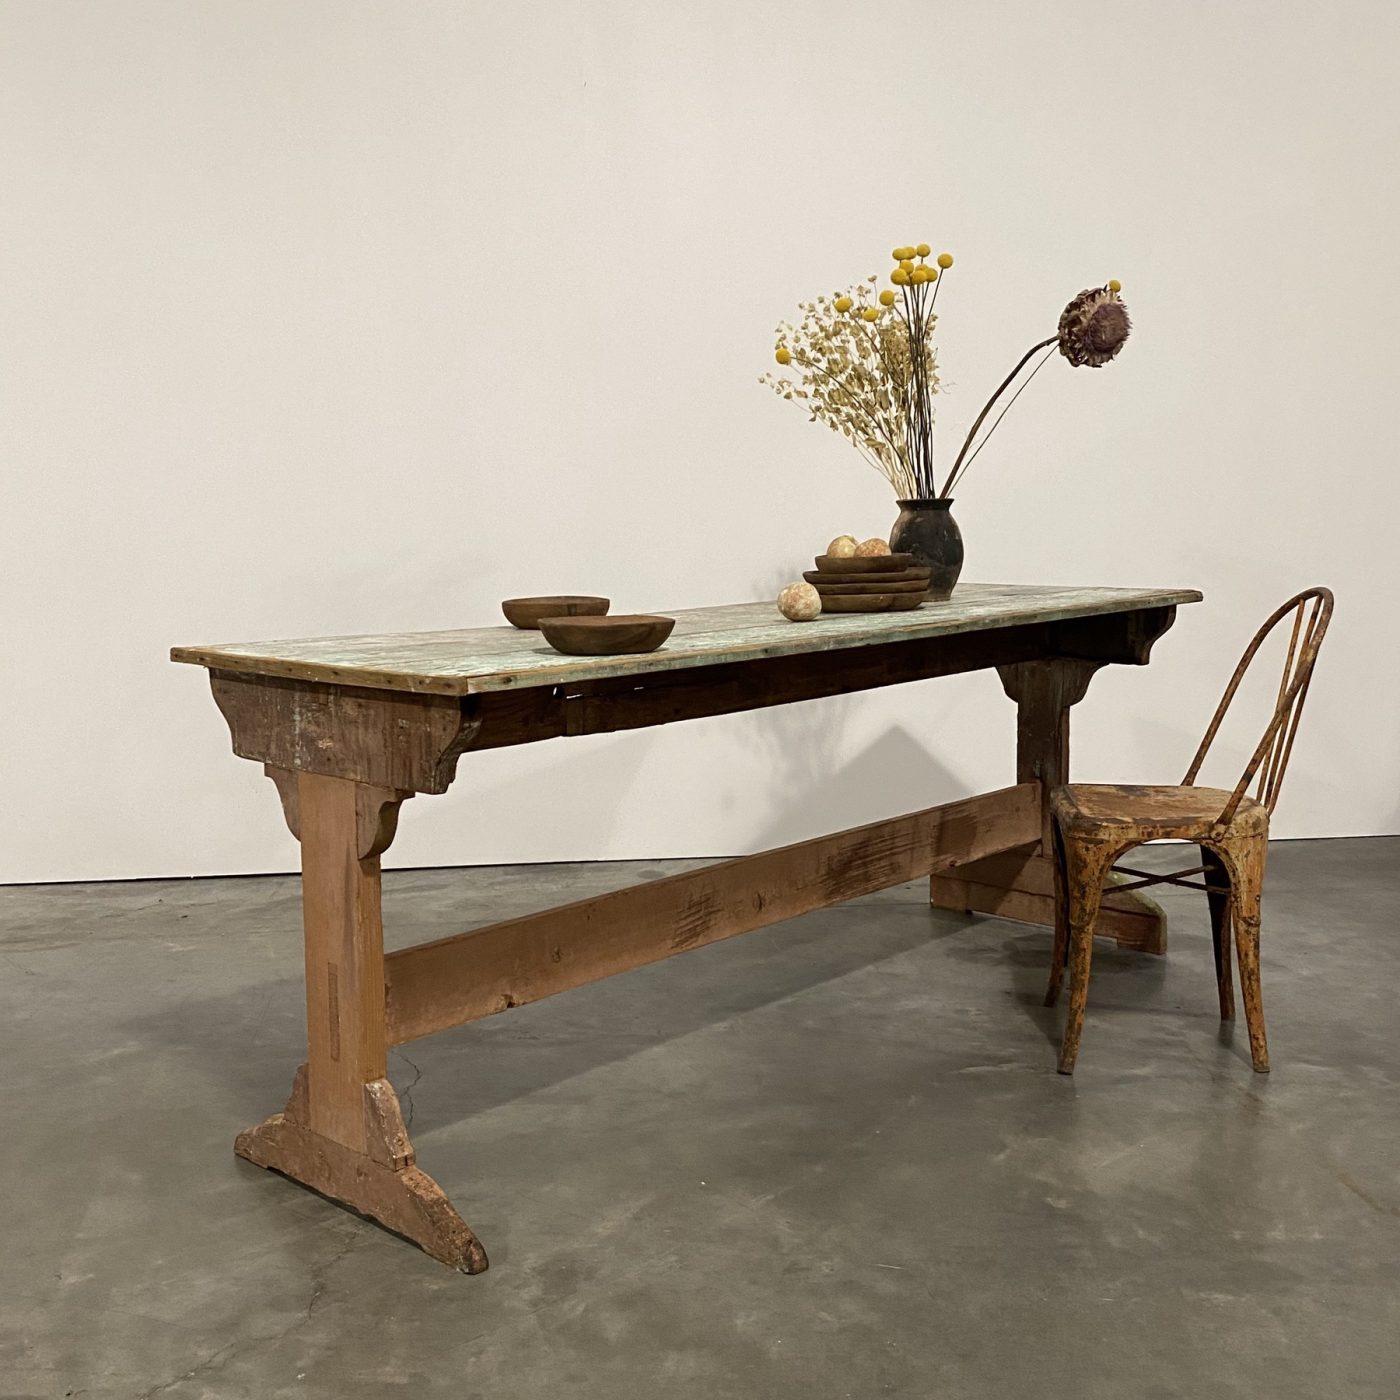 objet-vagabond-painted-table0003